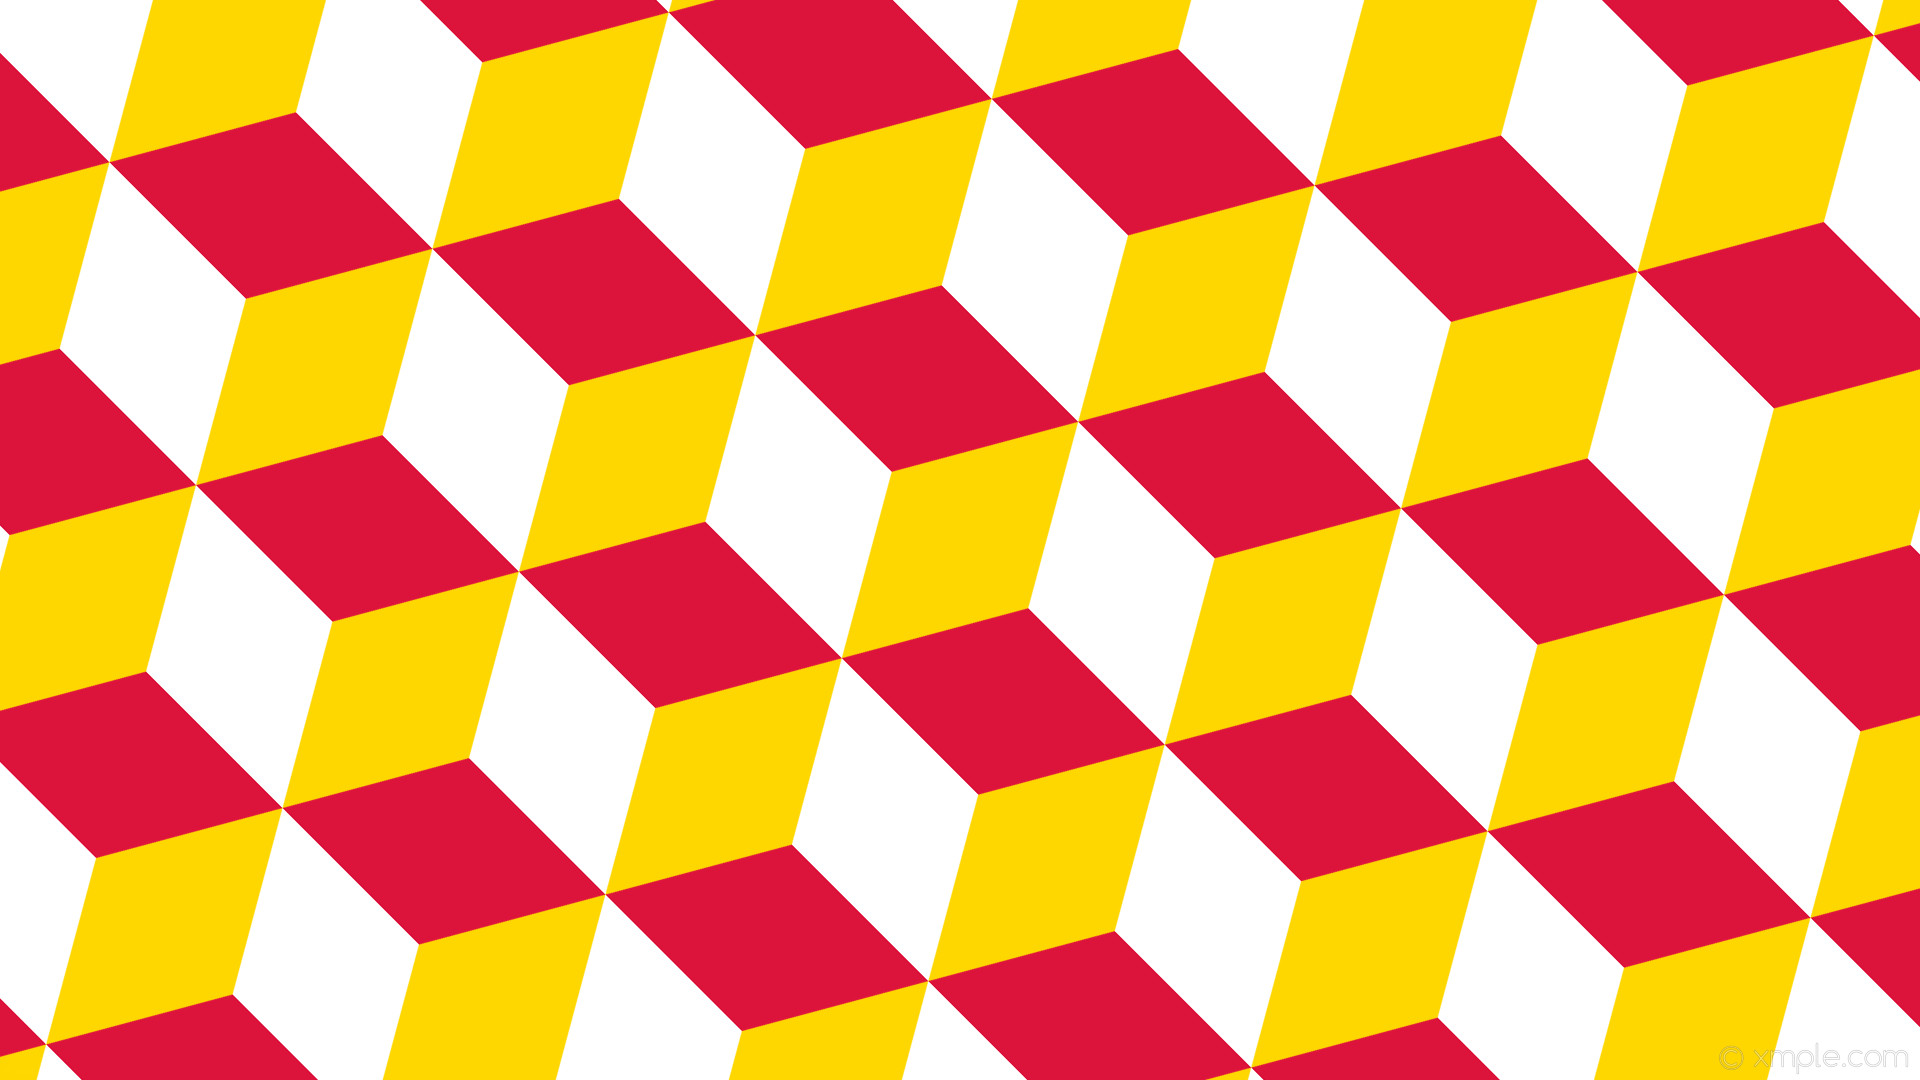 1920x1080 wallpaper 3d cubes yellow red white gold crimson #ffd700 #dc143c #ffffff  225Â°